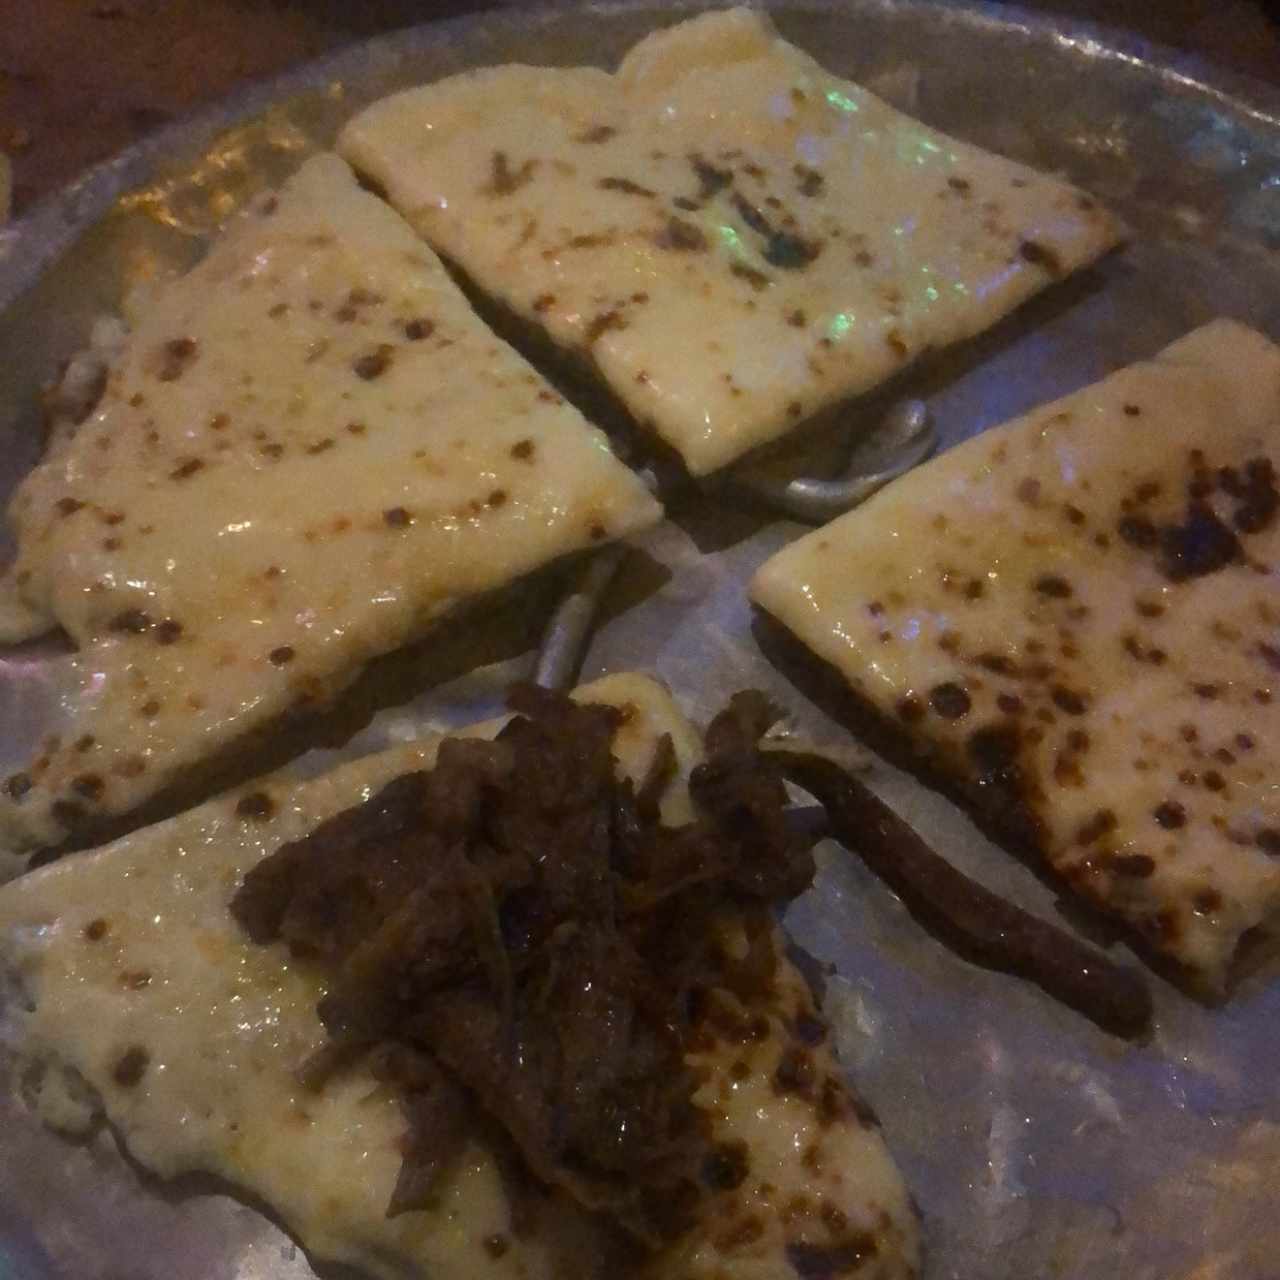 Patacon con queso gratinado y carne desmechada